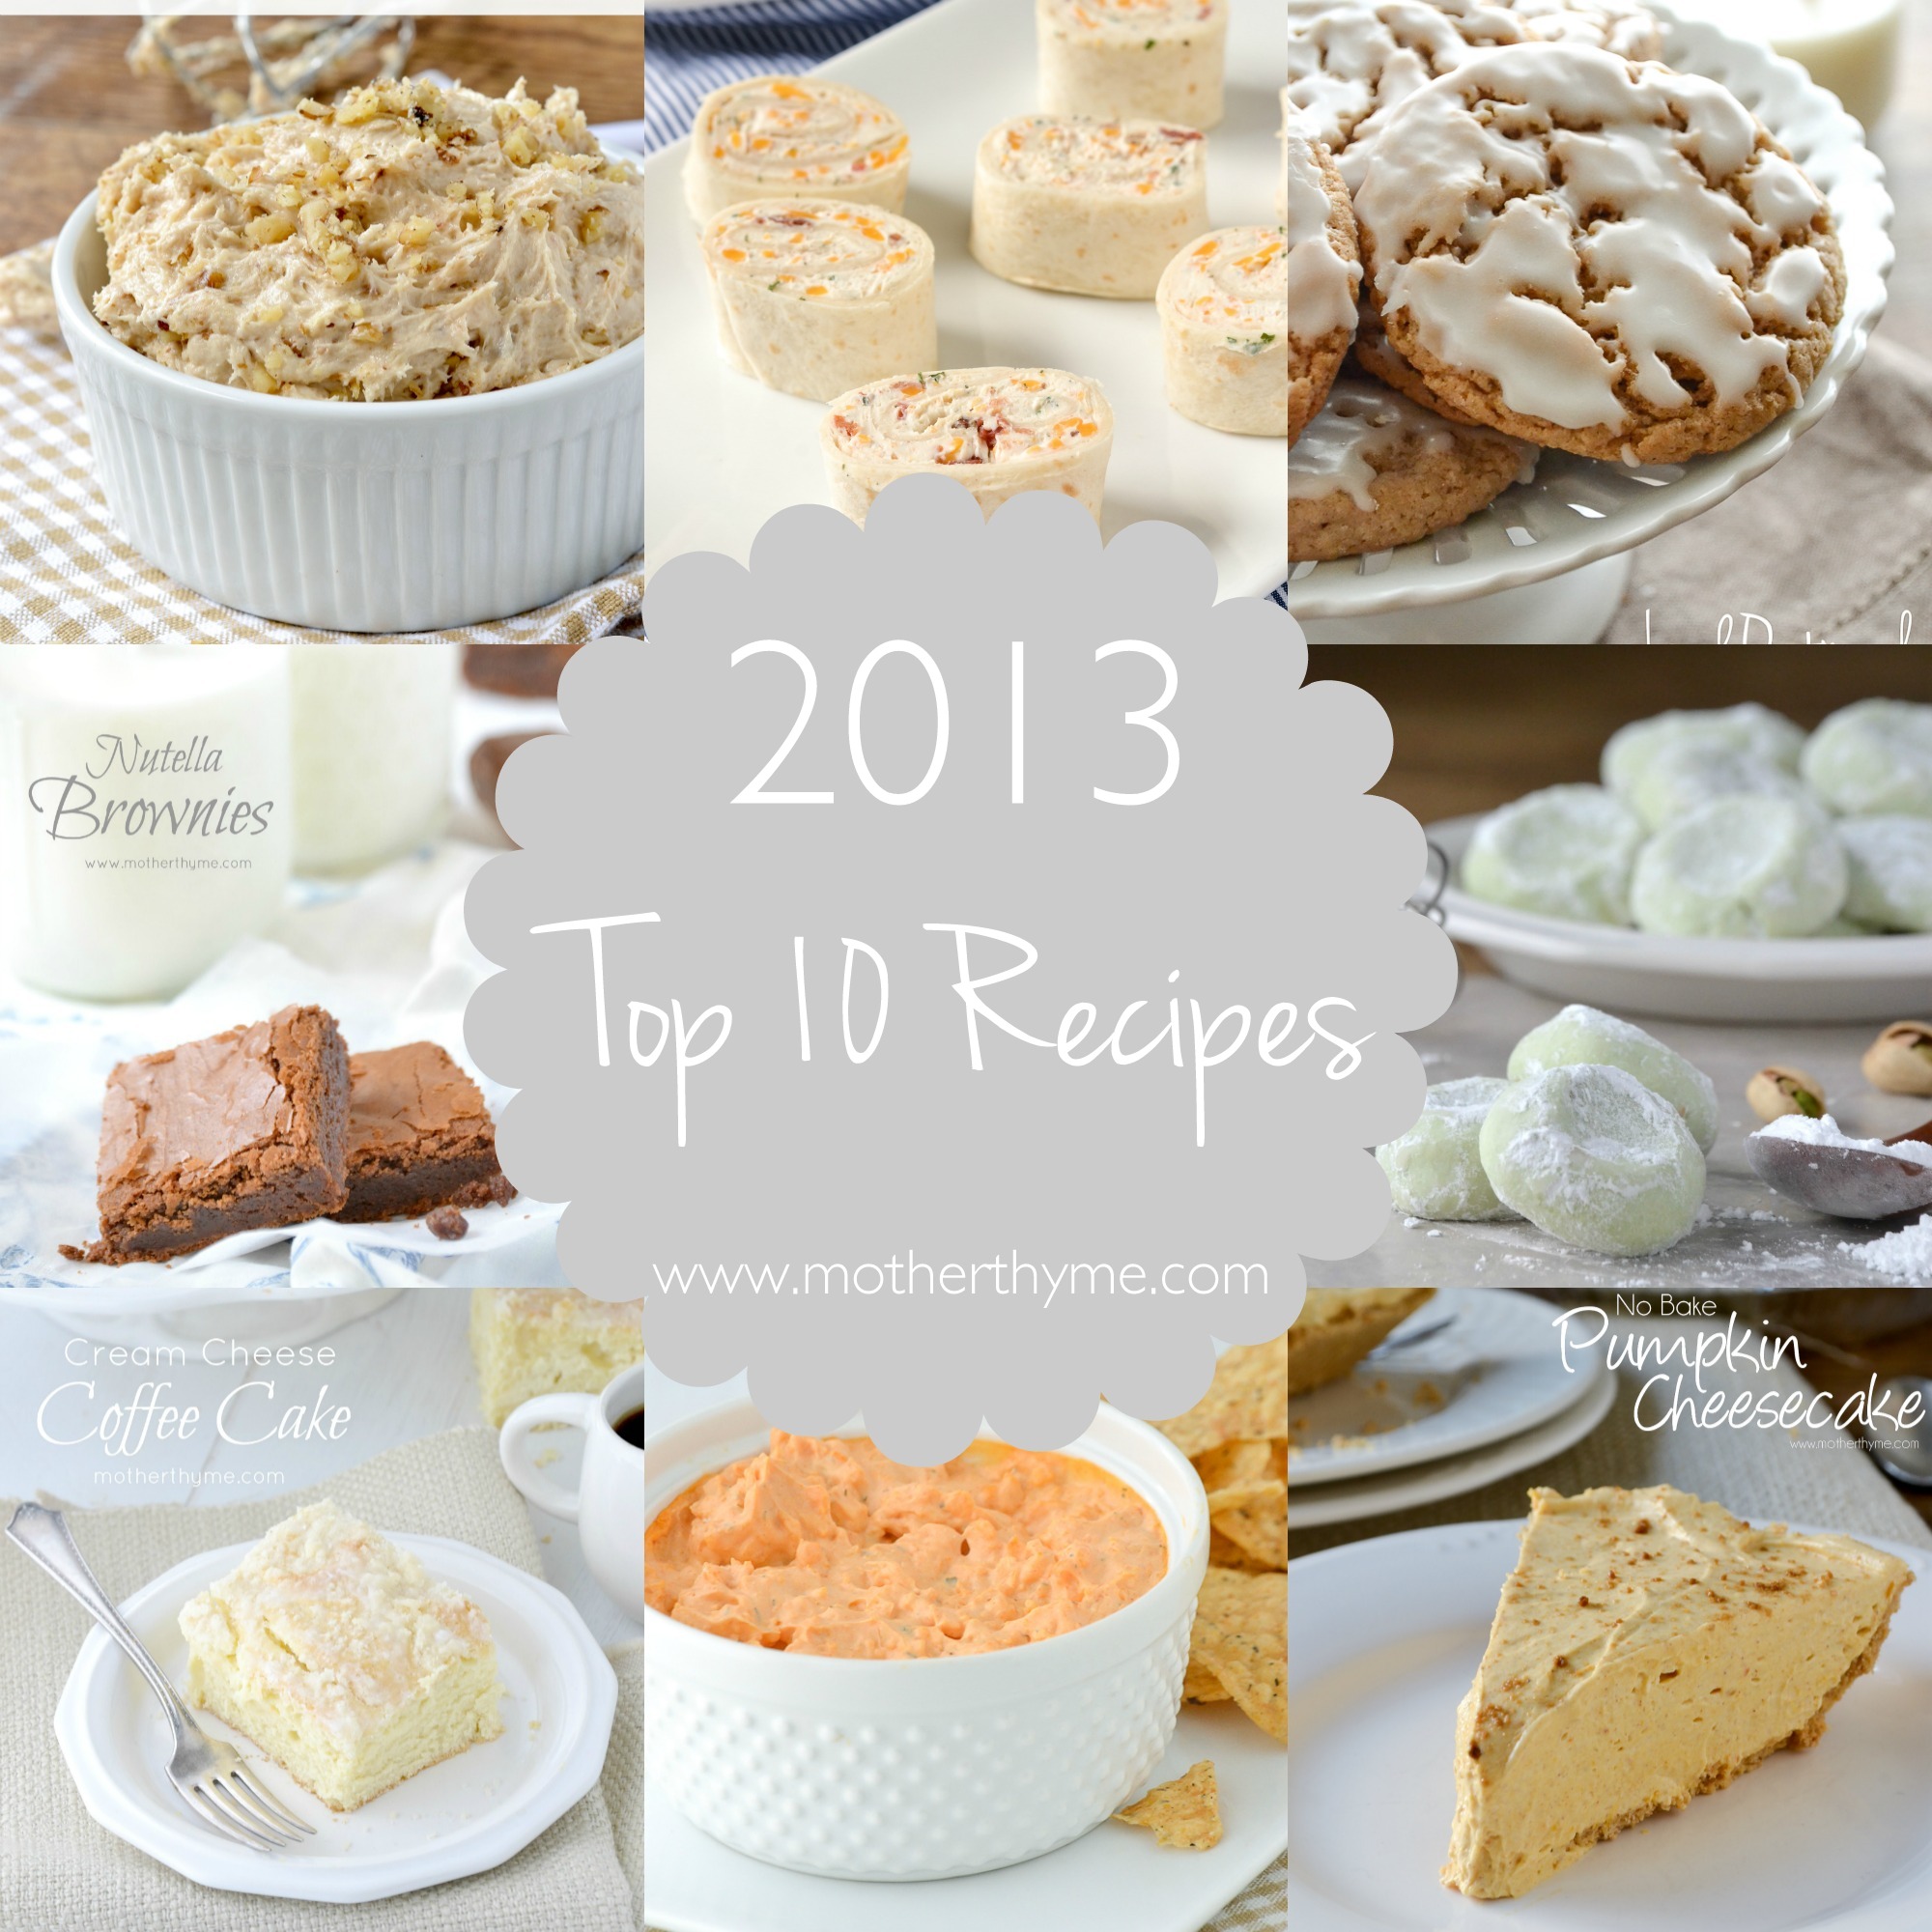 Top Recipes of 2013